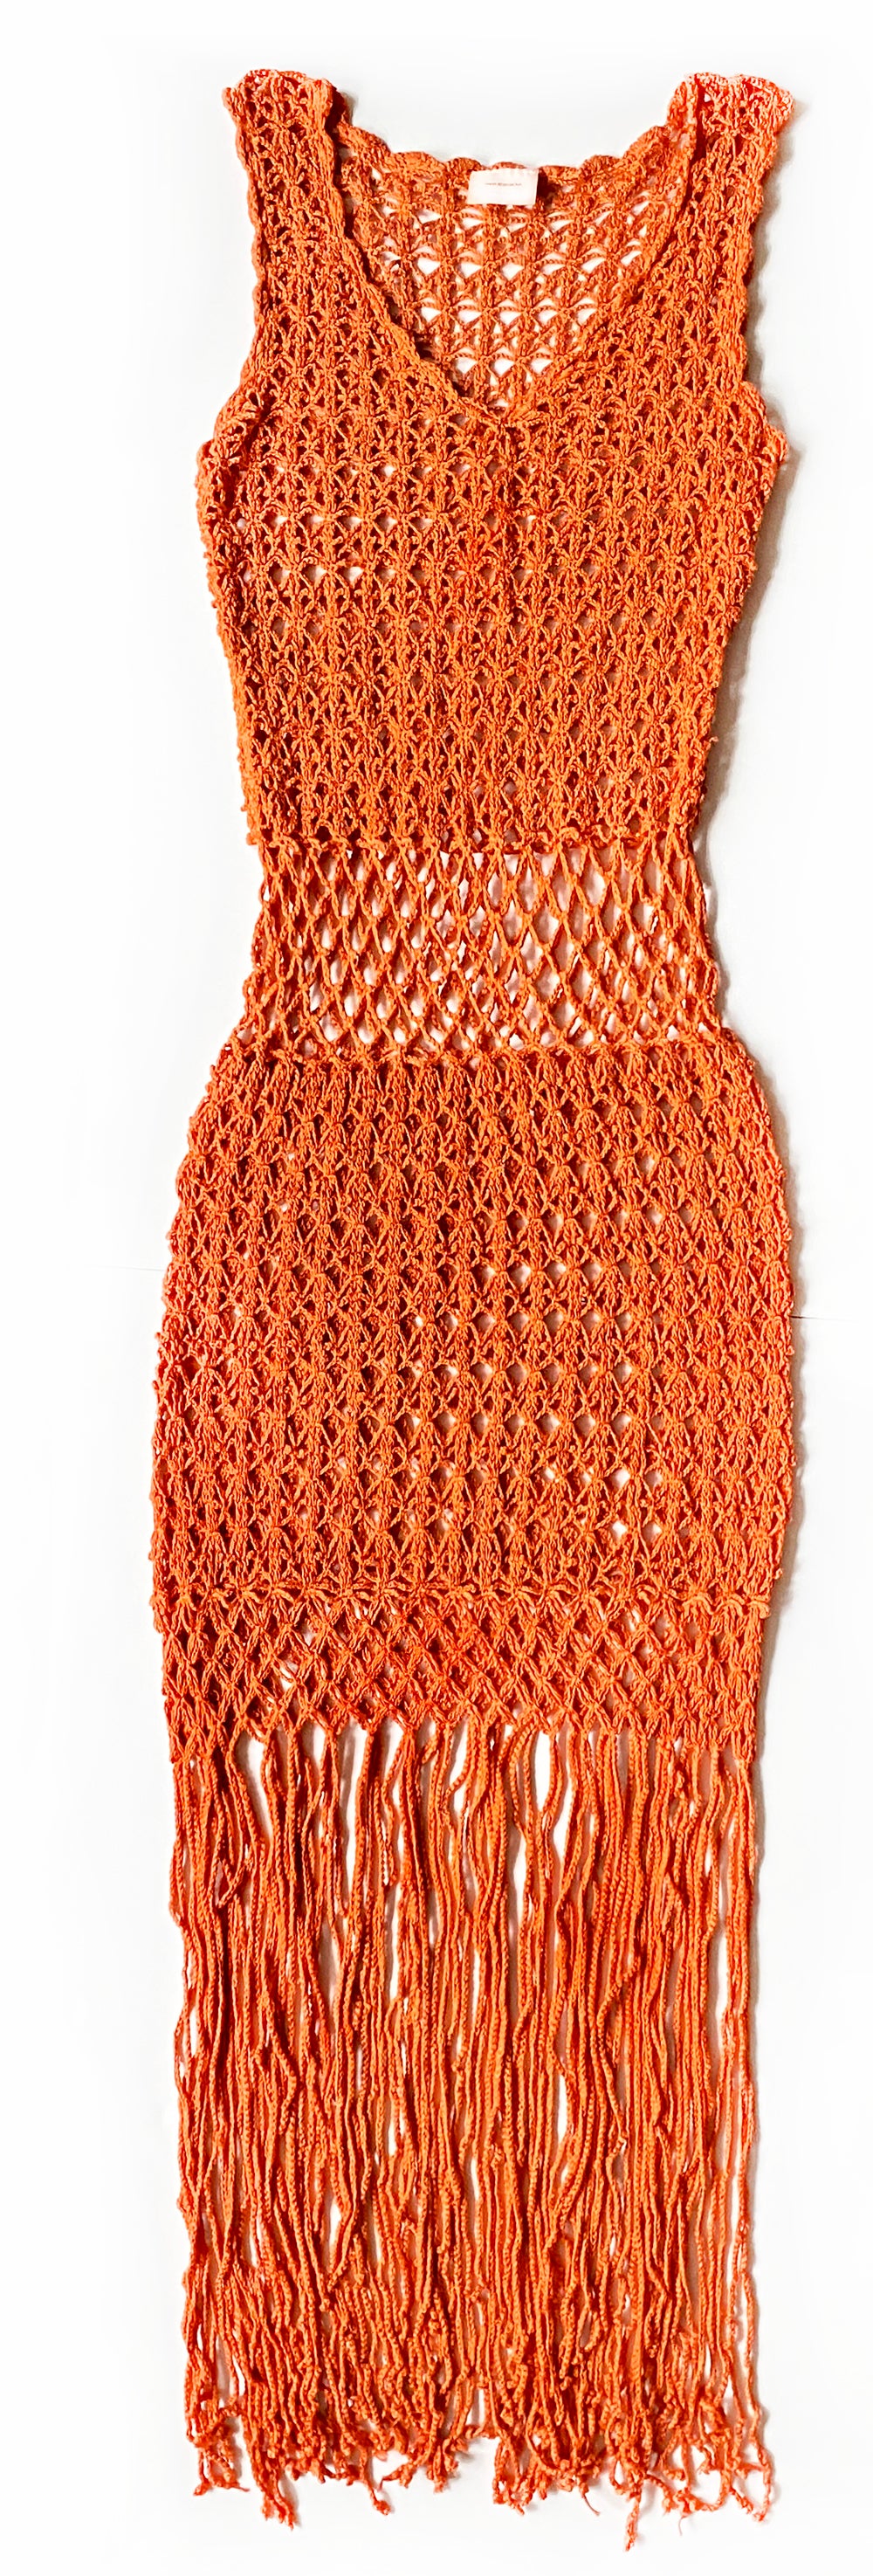 Women's Crochet Dresses | Gypsy Dress | Anna Kosturova - annakosturova